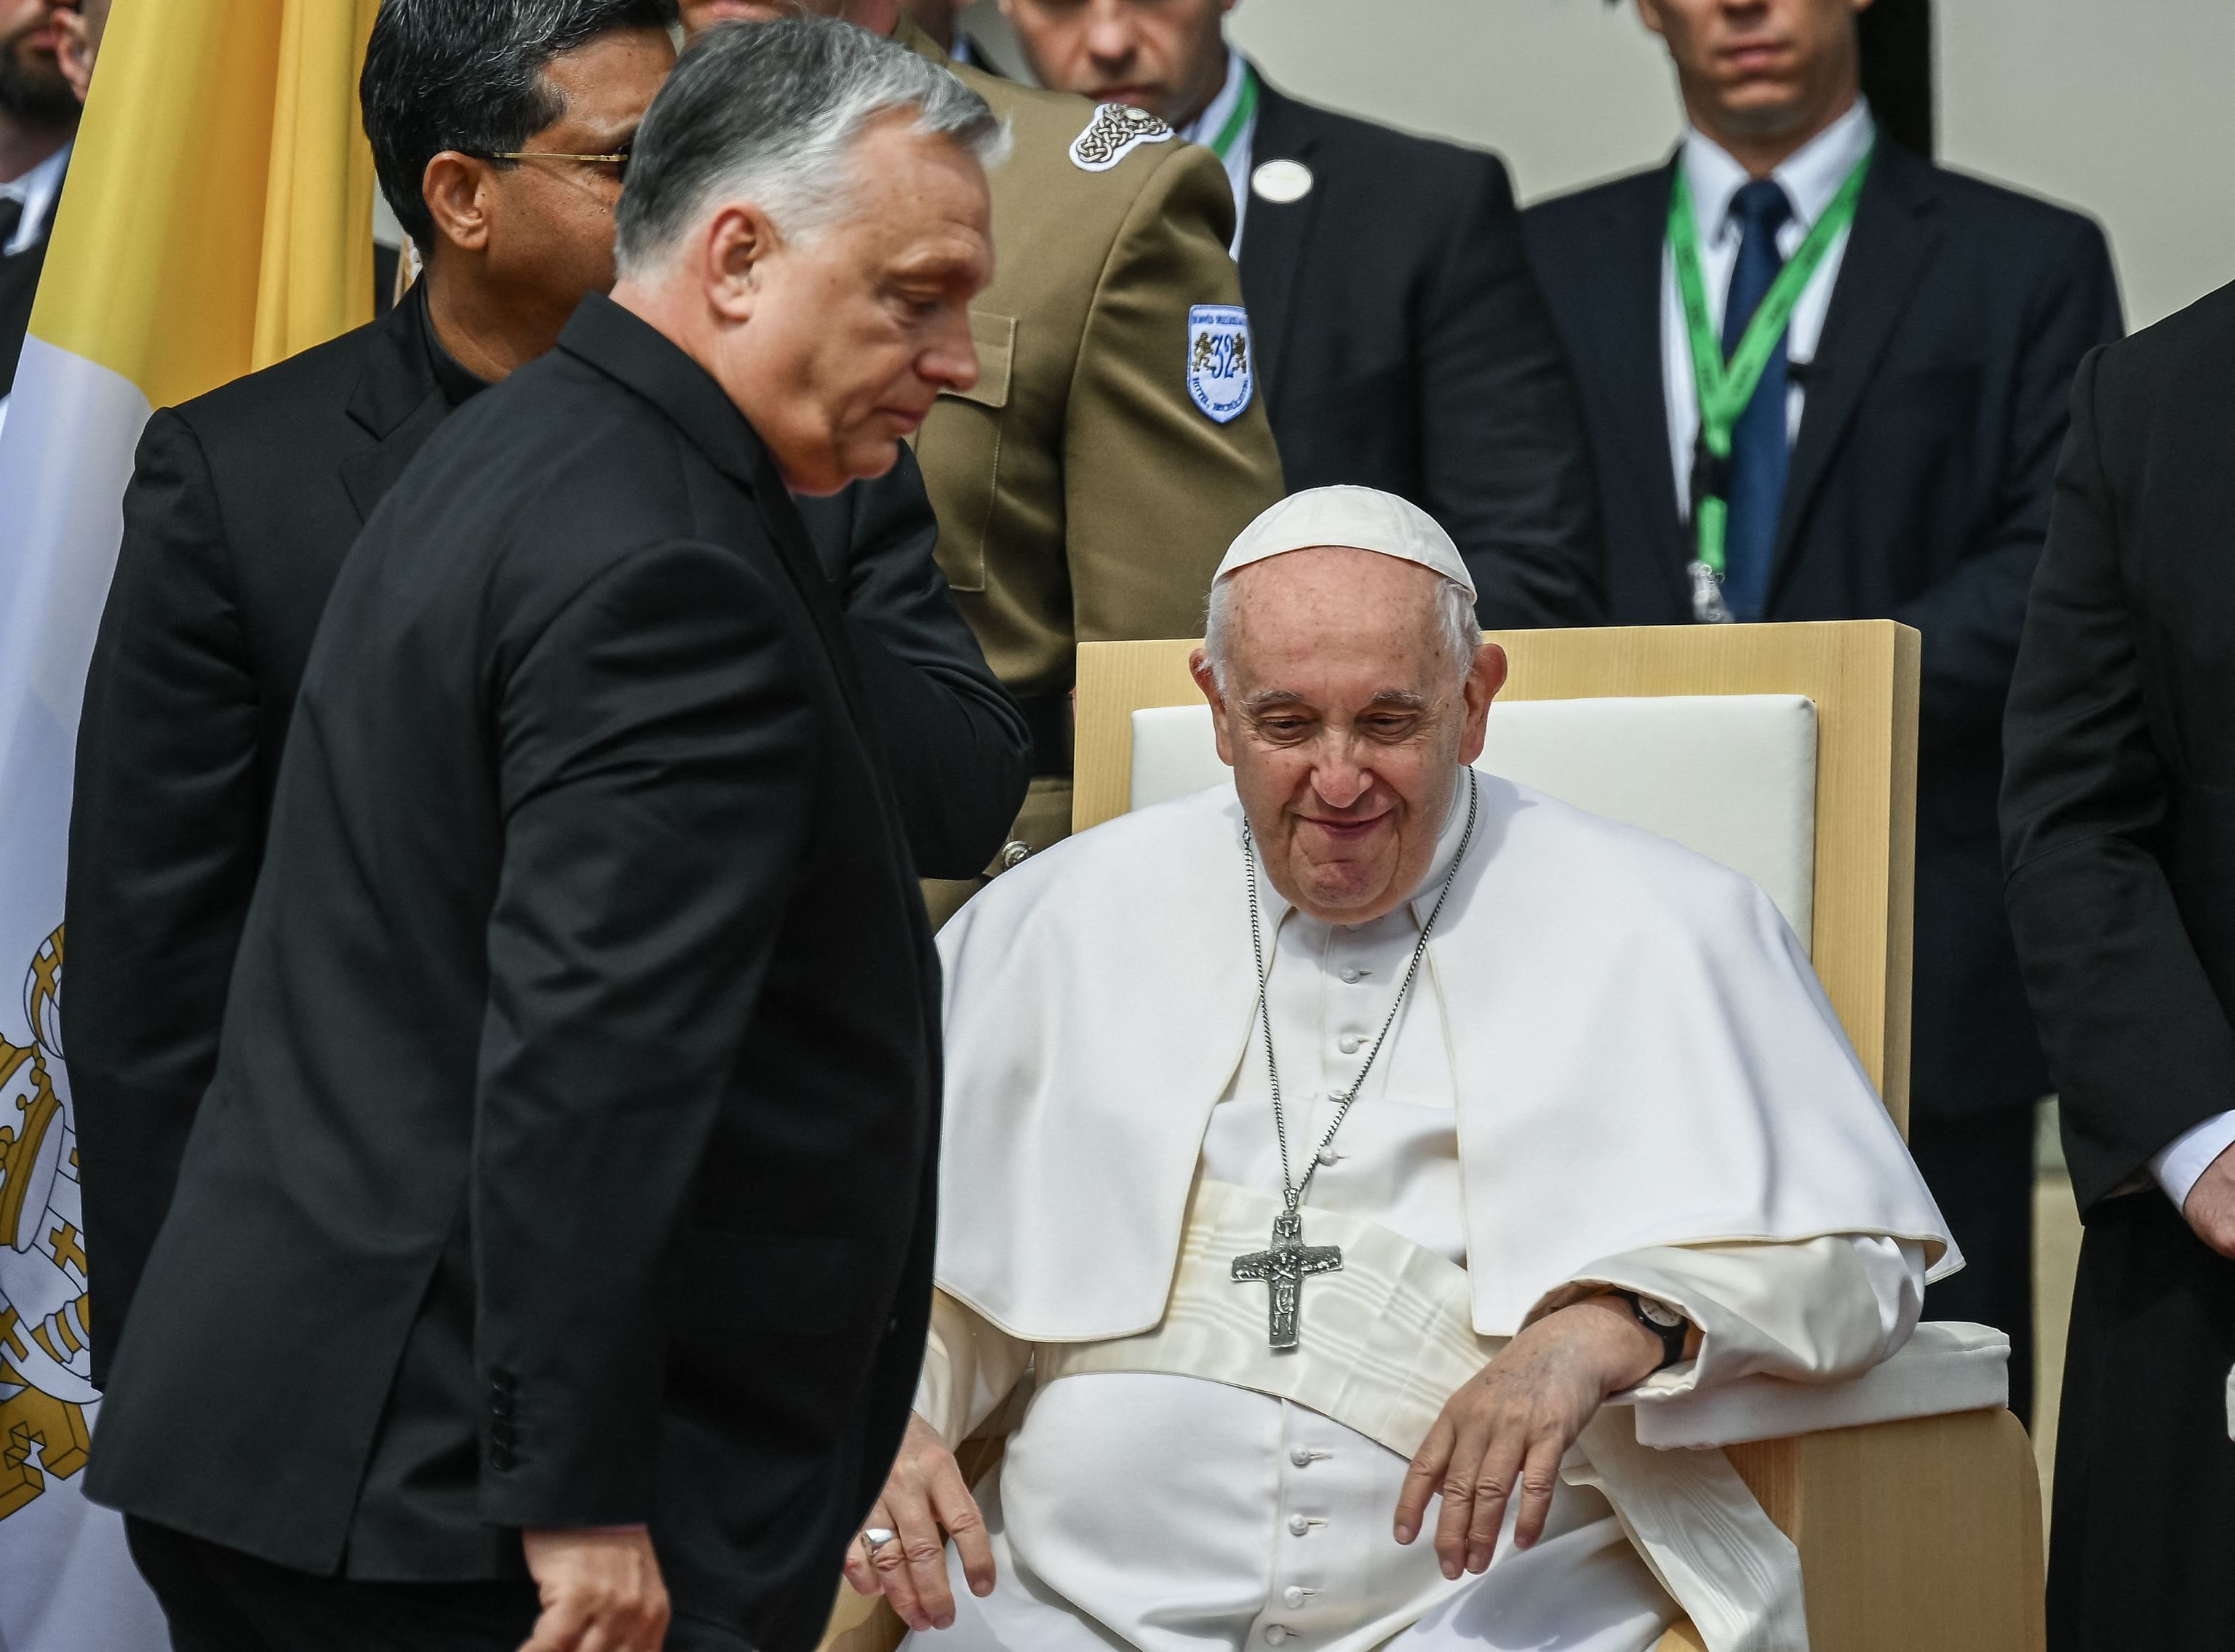 El Papa Francisco pide frente a Orban que Europa se ocupe de la crisis migratoria «sin excusas»